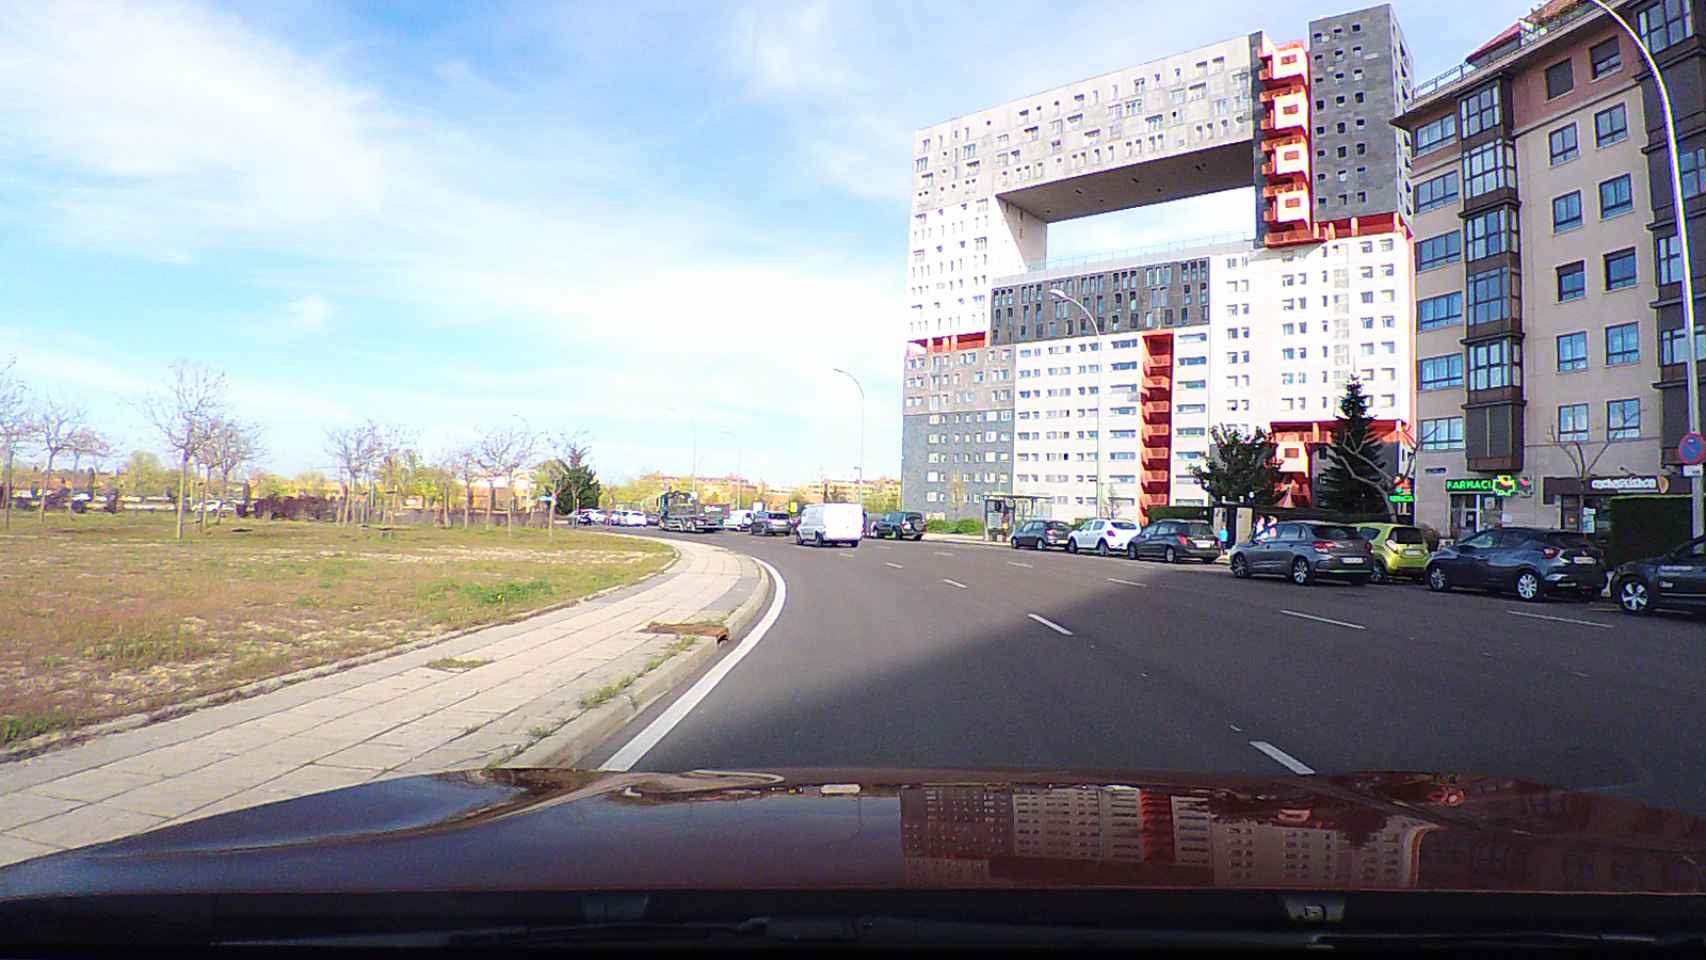 Imagen tomada por el autor de esta noticia con la cámara de Citroën en los alrededores de Madrid.